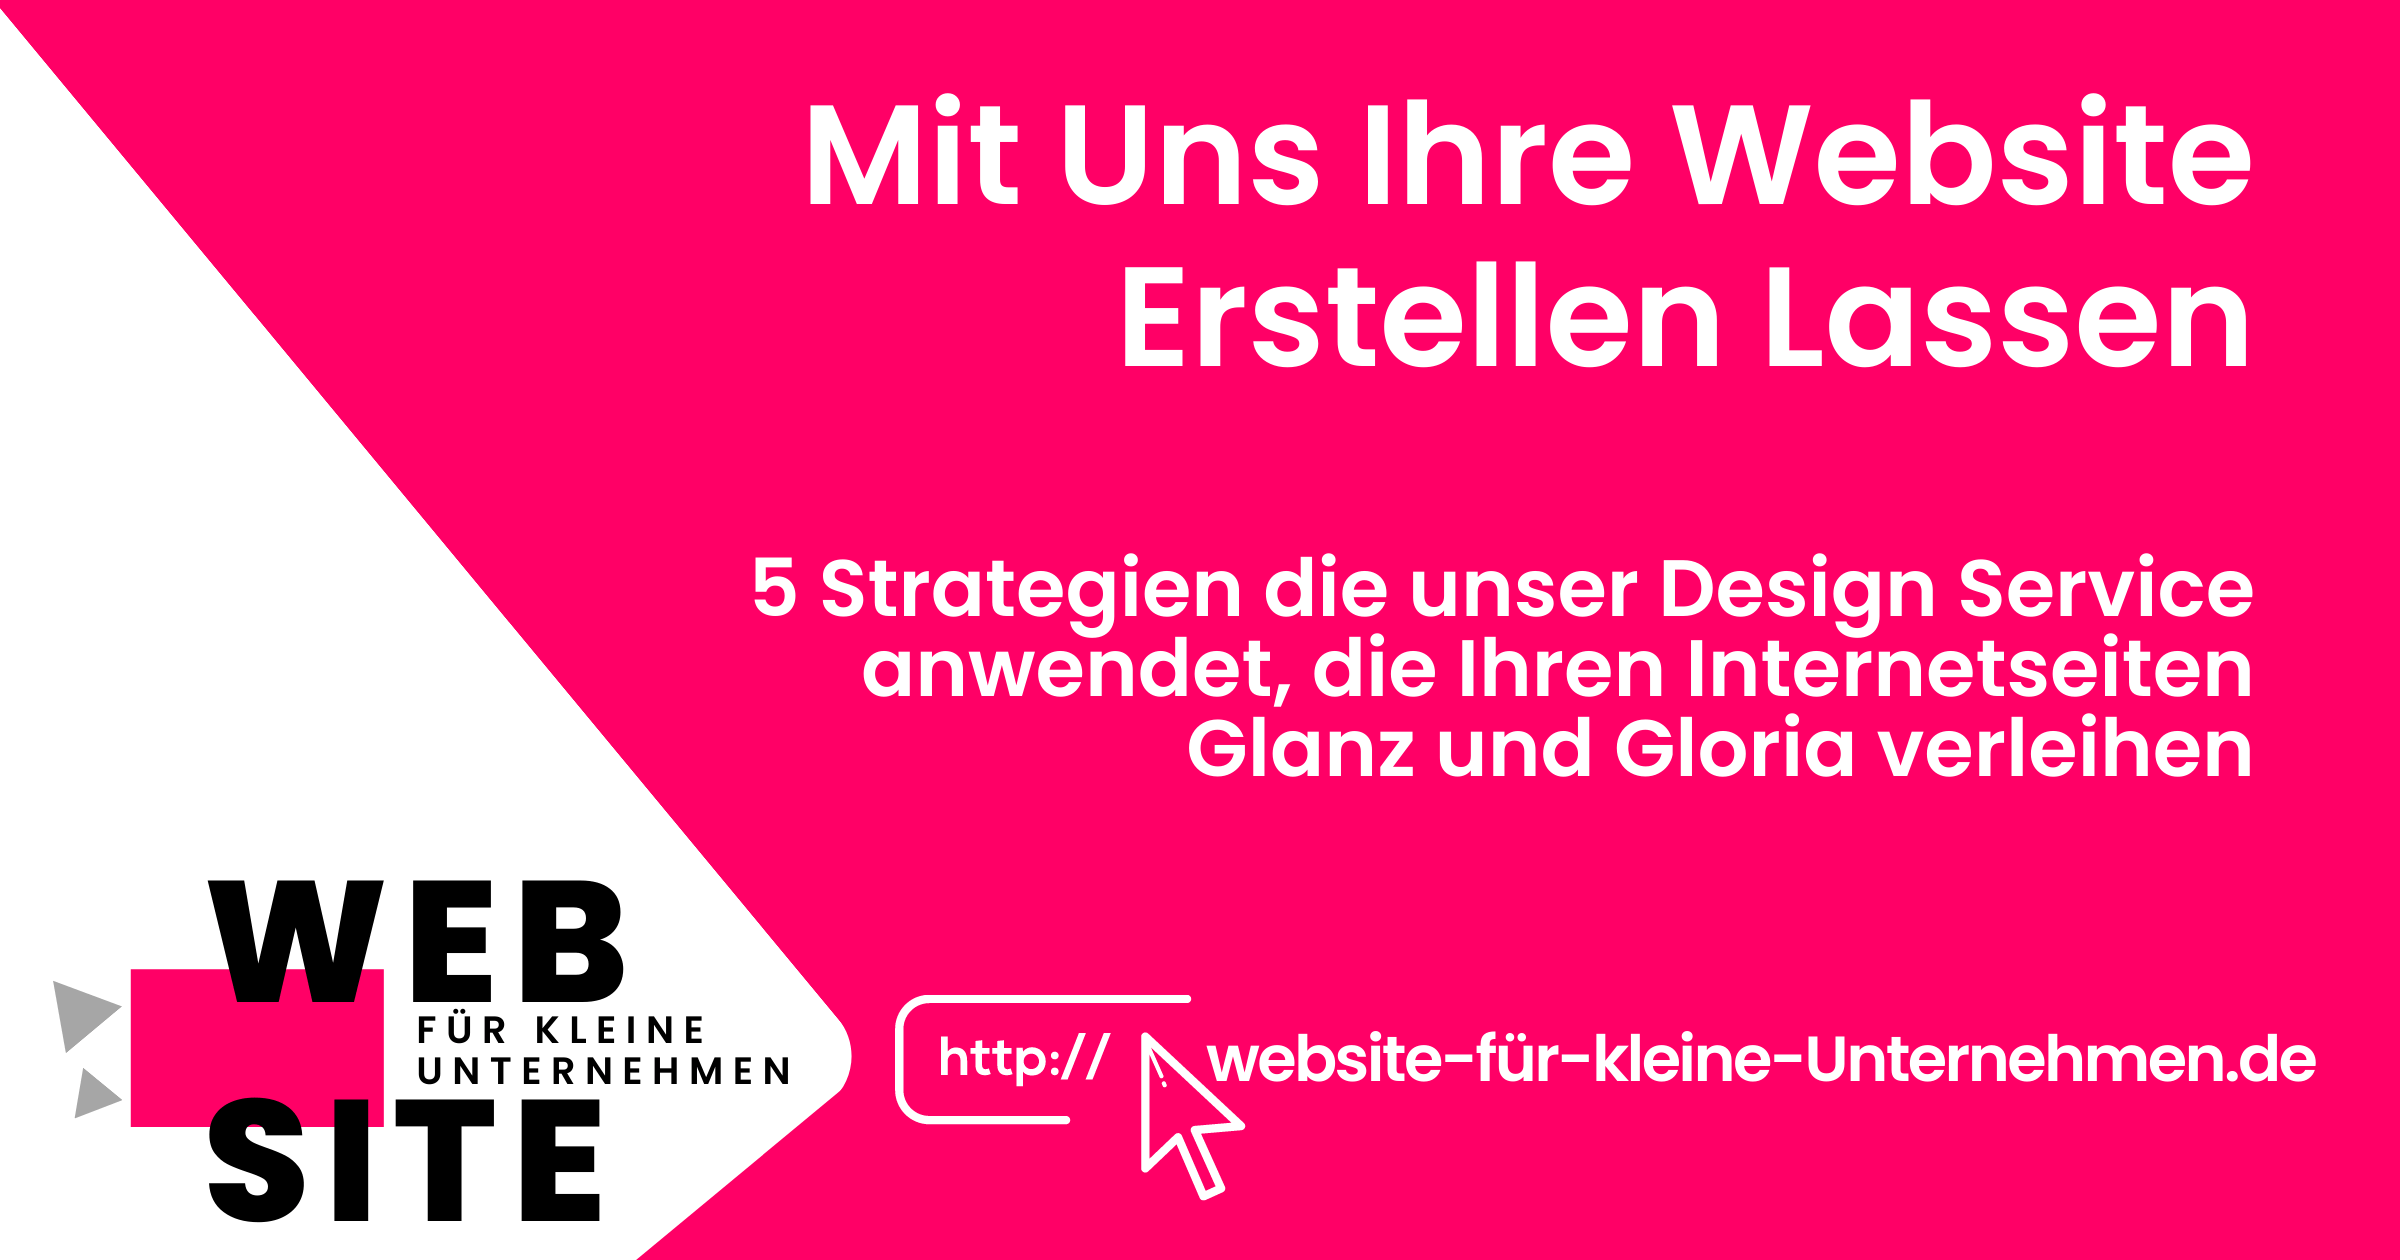 Website Erstellen Lassen - Website fuer kleine Unternehmen - Featured Image Website Erstellen Lassen